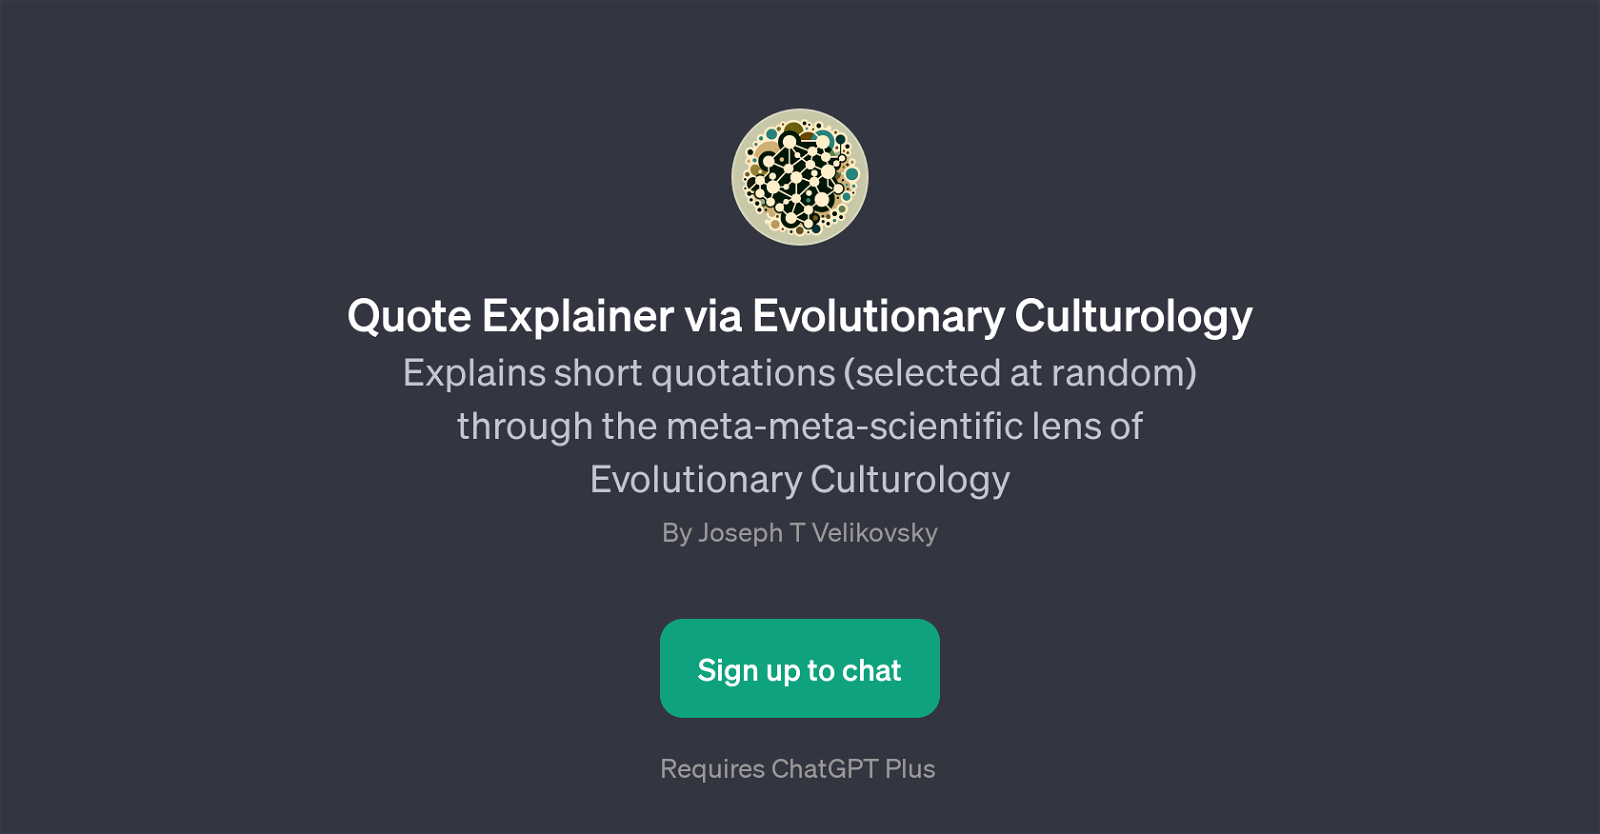 Quote Explainer via Evolutionary Culturology website